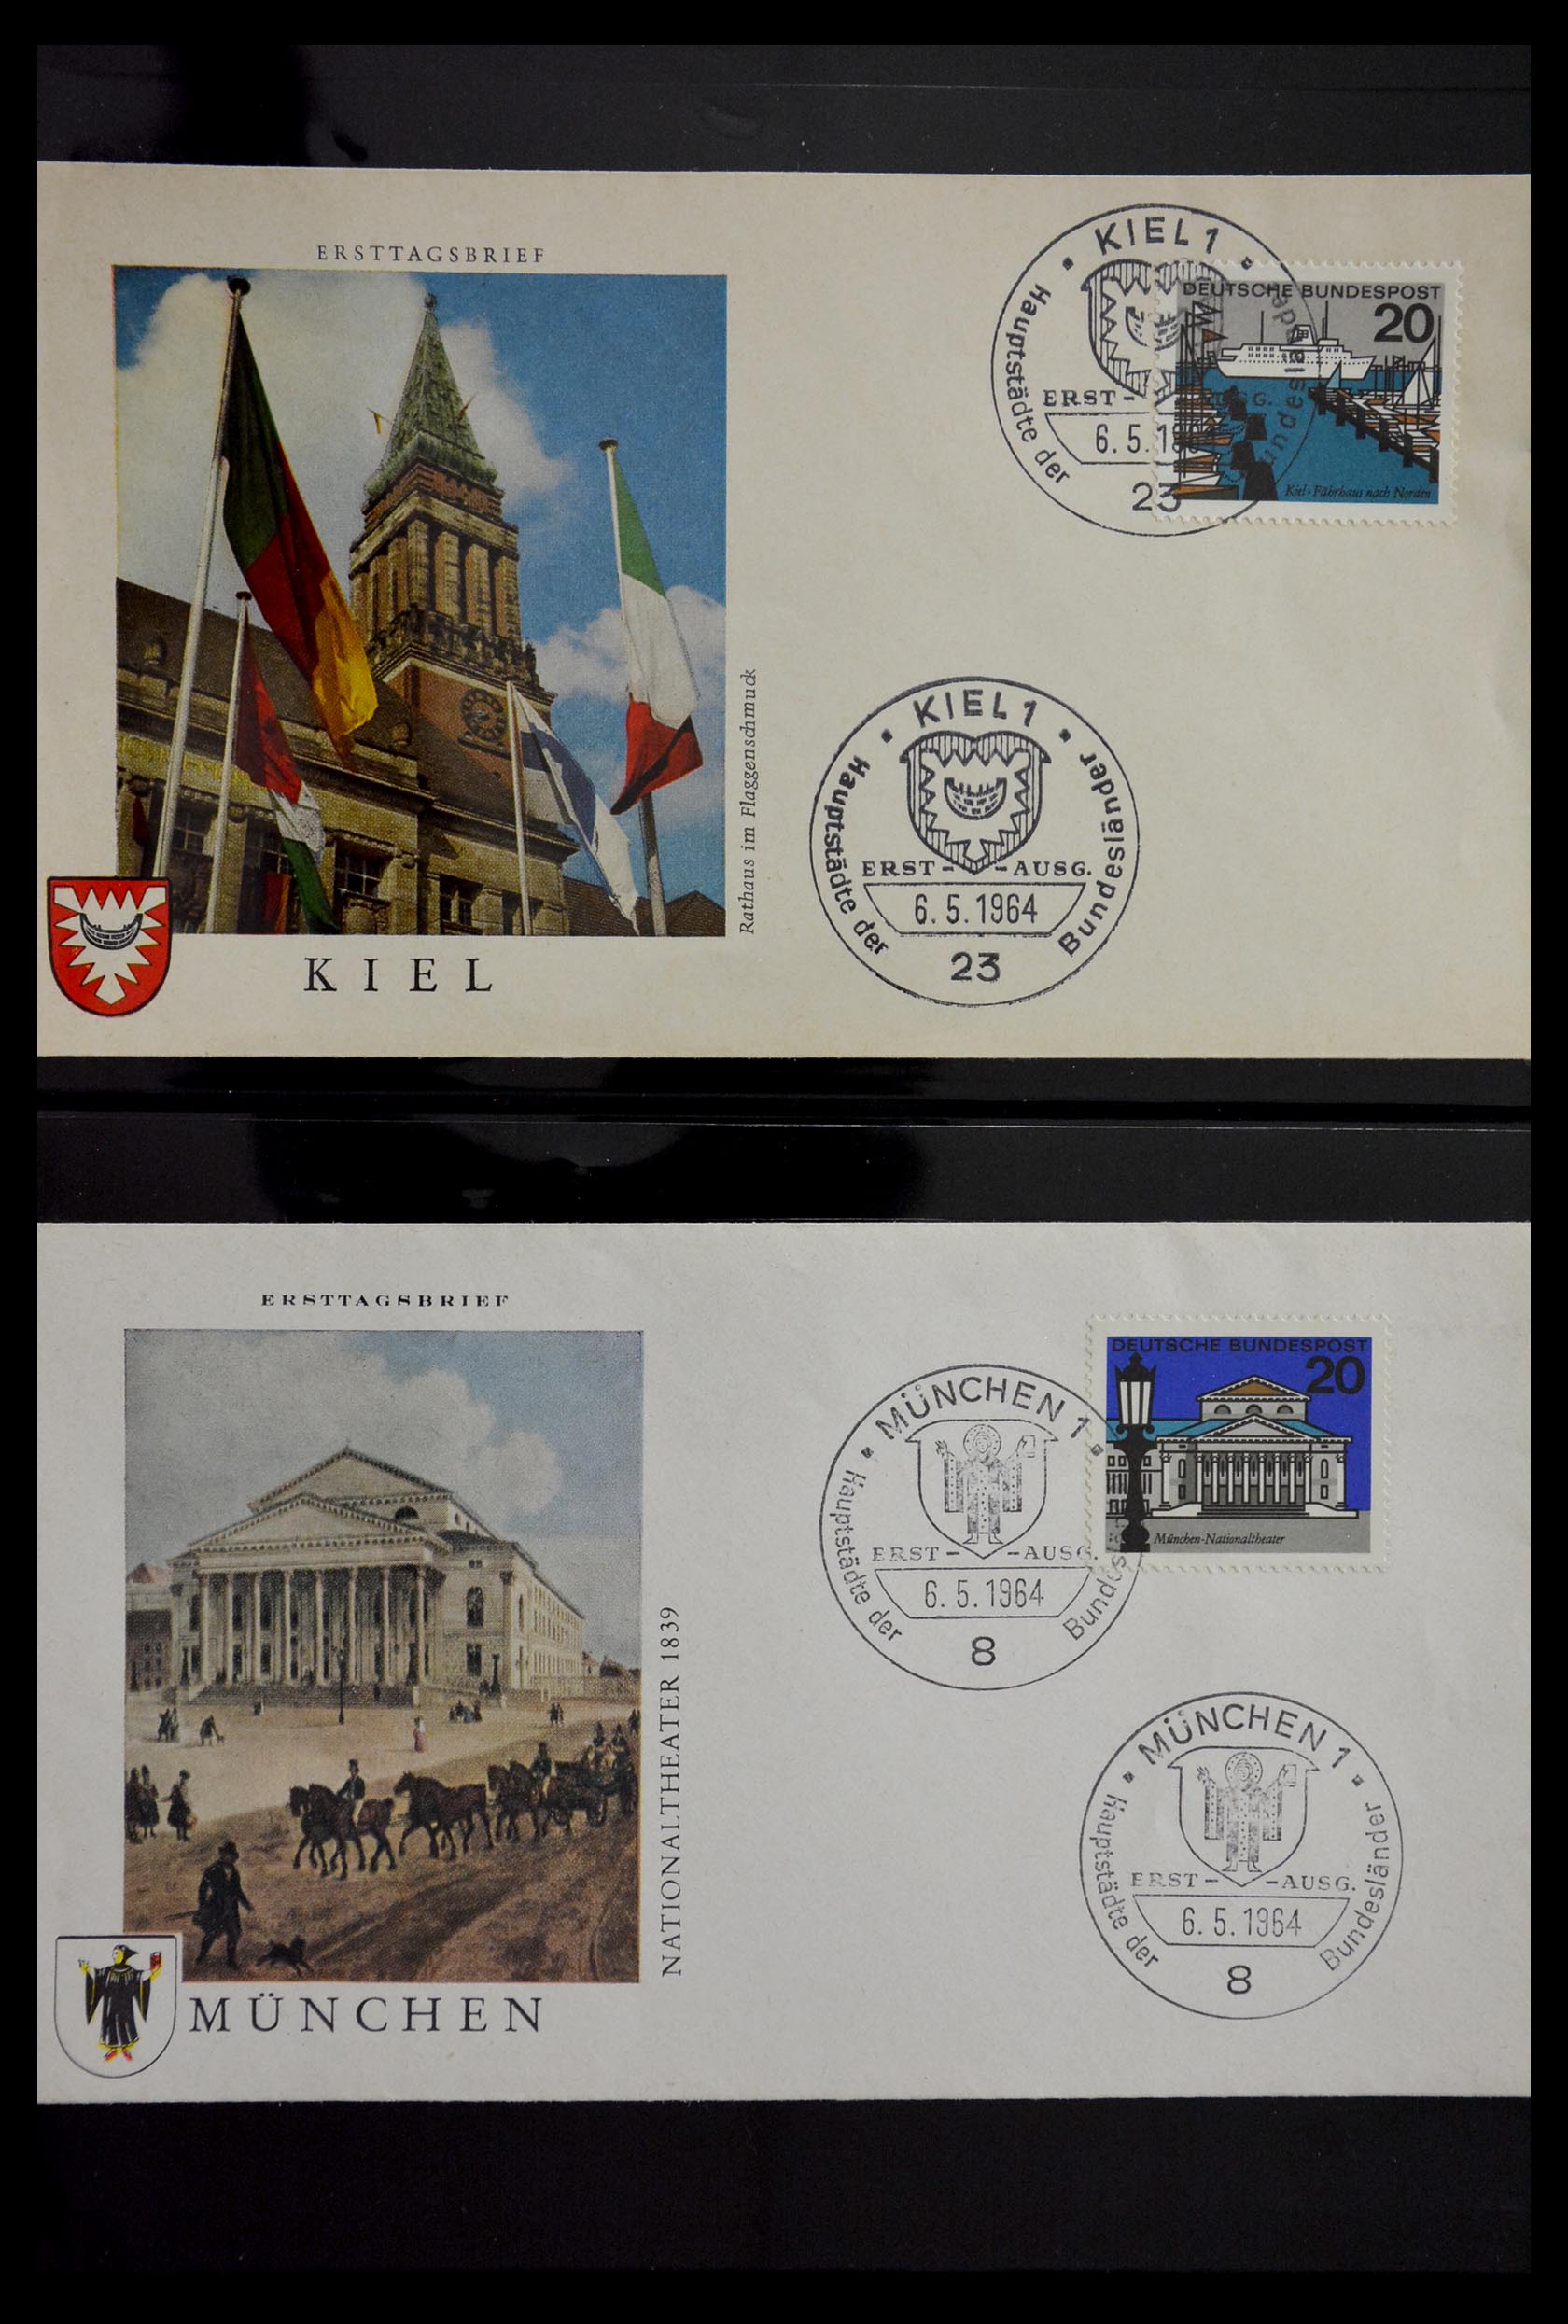 29382 029 - 29382 Duitsland brieven en FDC's 1936-1965.